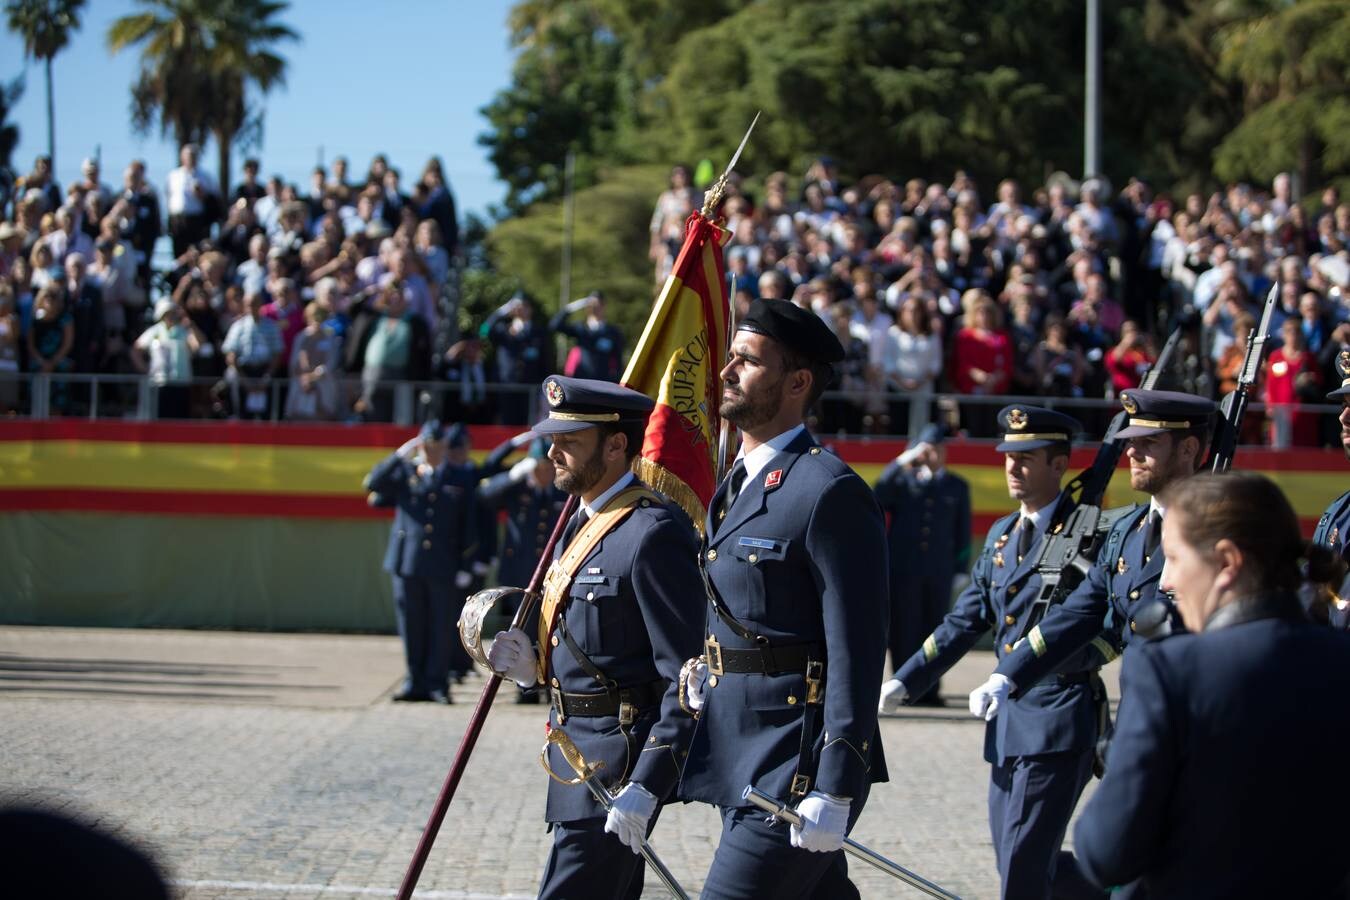 La celebración del Día del Veterano en Sevilla, en imágenes